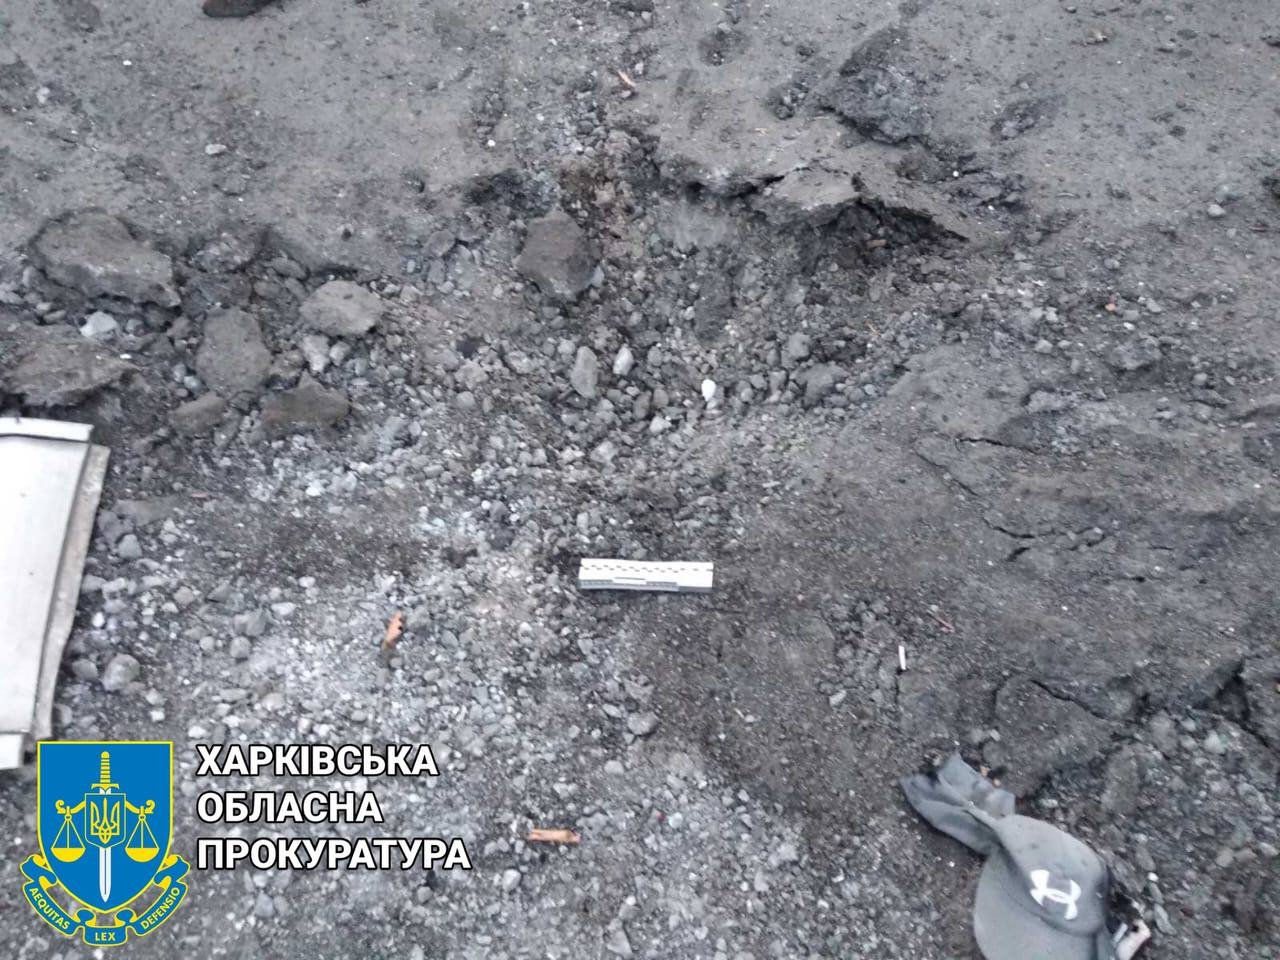 Артилерійський обстріл міста Чугуїв на Харківщині: кількість поранених зросла